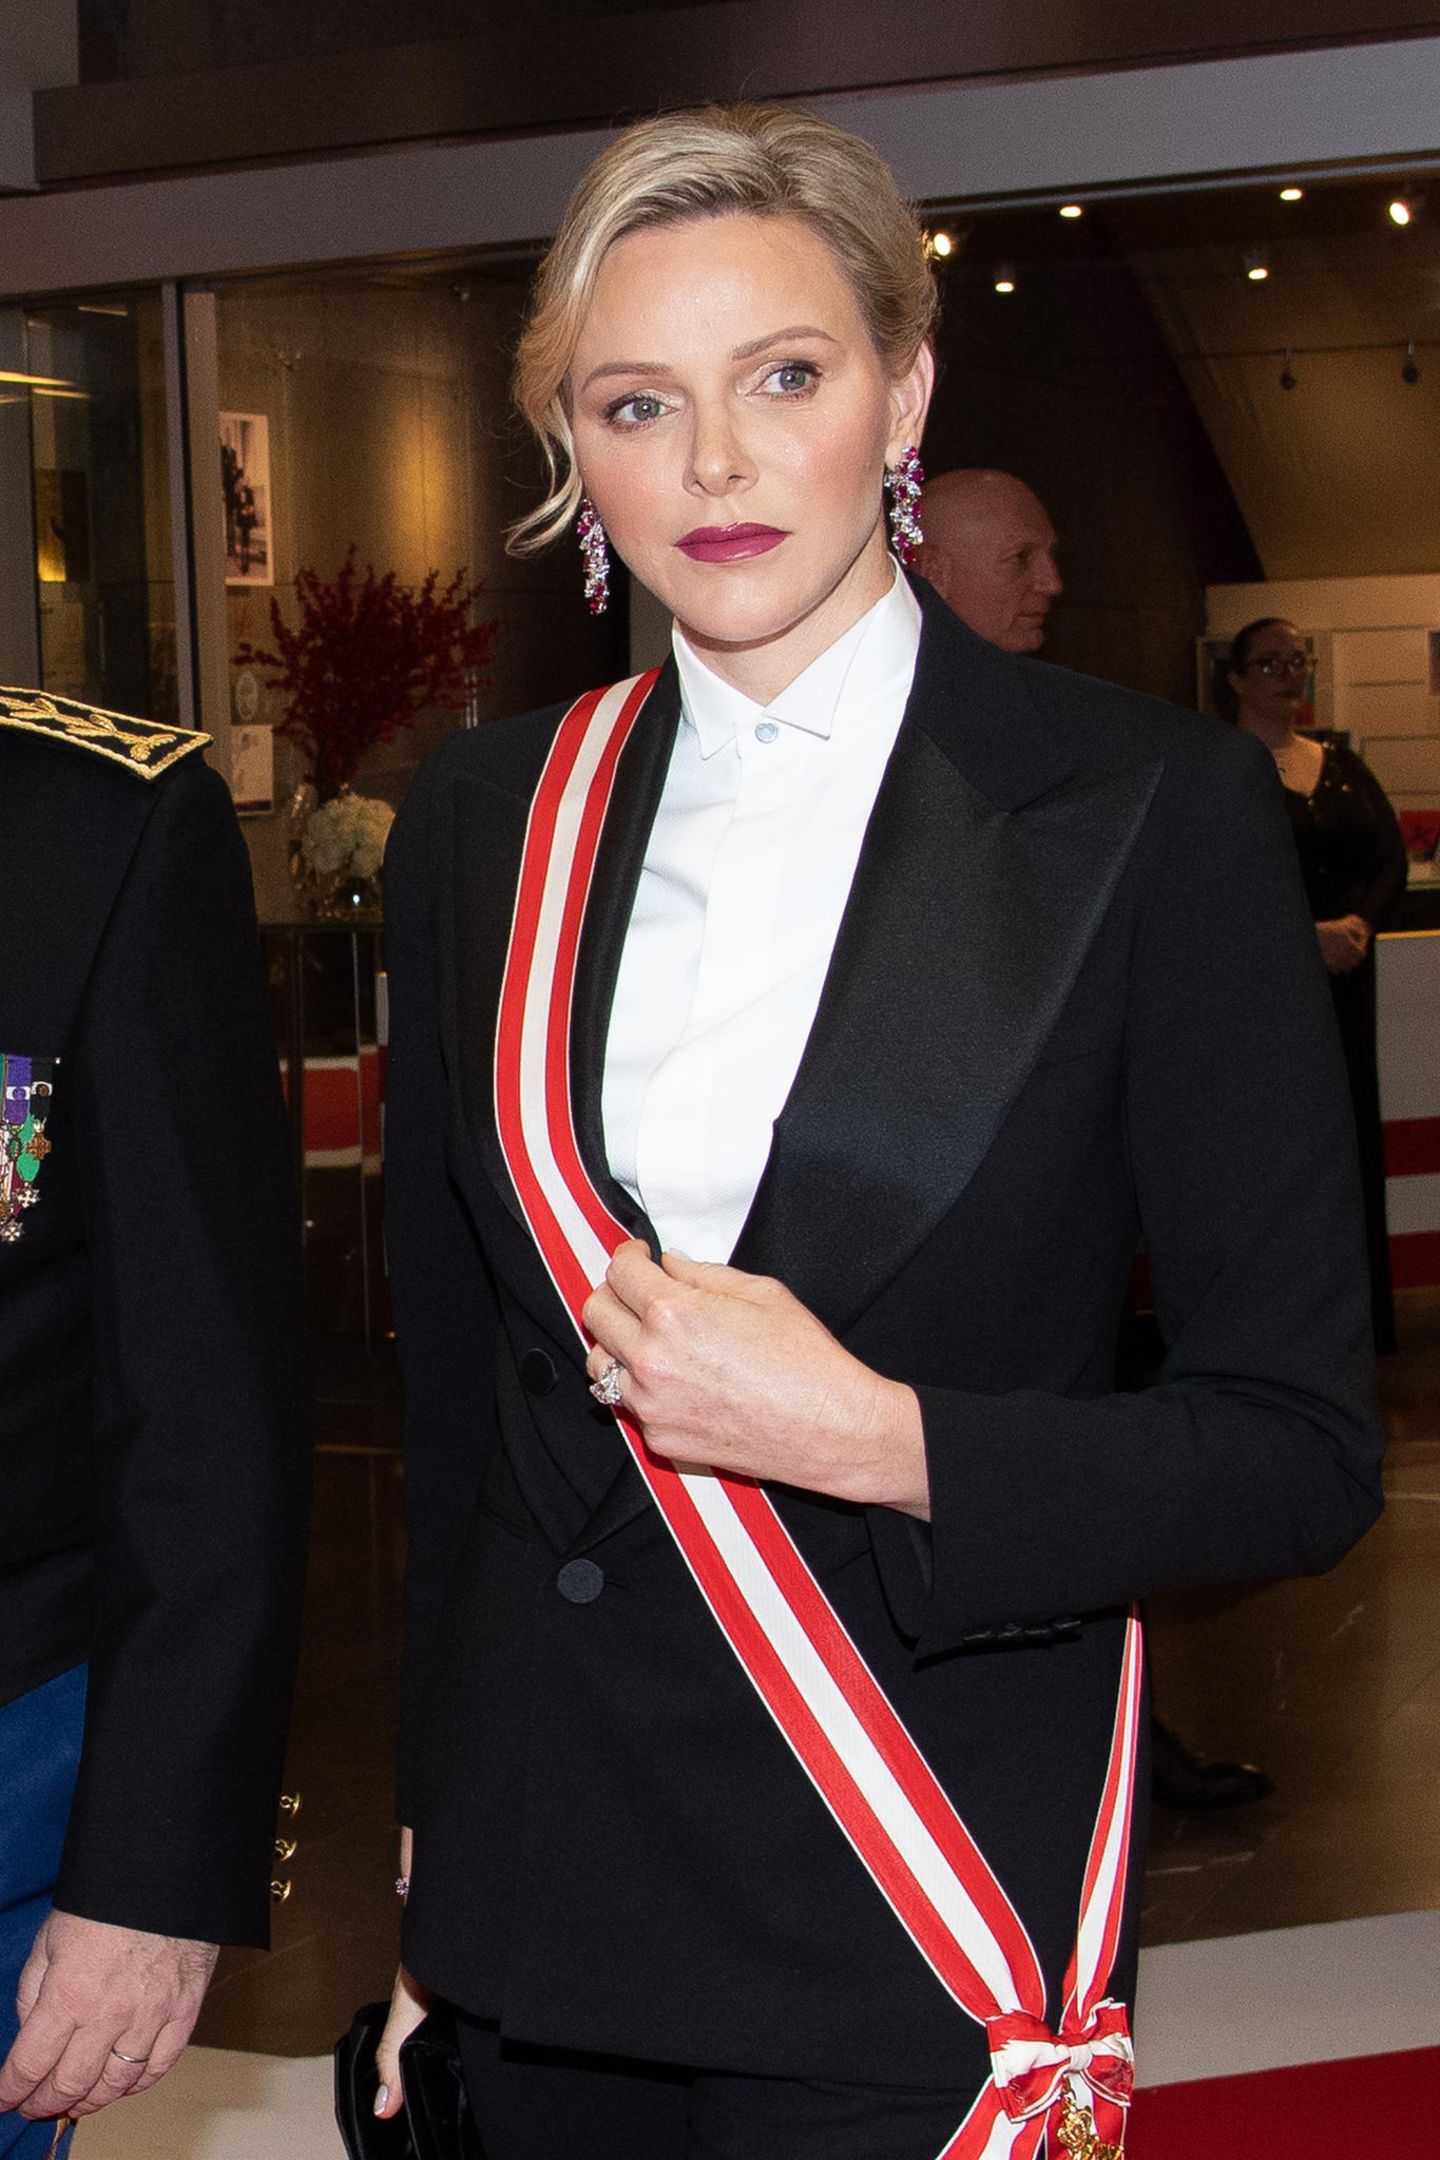 Während Fürstin Charlène am Nachmittag ganz in Weiß erschien, setzt sie abends auf eine schicke Zweiteiler-Kombination in Schwarz. Die rot gestreifte Schärpe ist ein toller Akzent auf der weißen, hochgeknöpften Bluse.